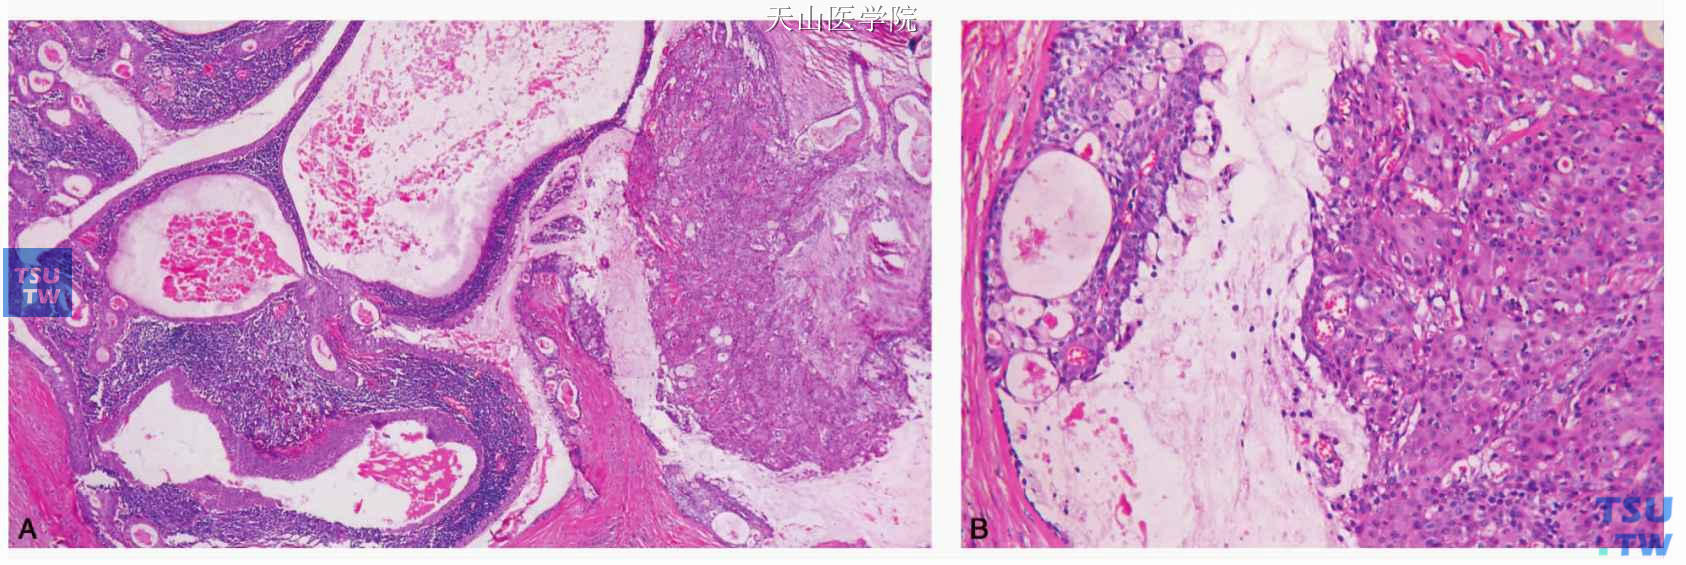 沃辛瘤 ：黏液表皮样癌变：A.低倍镜下见癌变区位于图的右侧；B.高倍镜下见典型的黏液表皮样癌结构